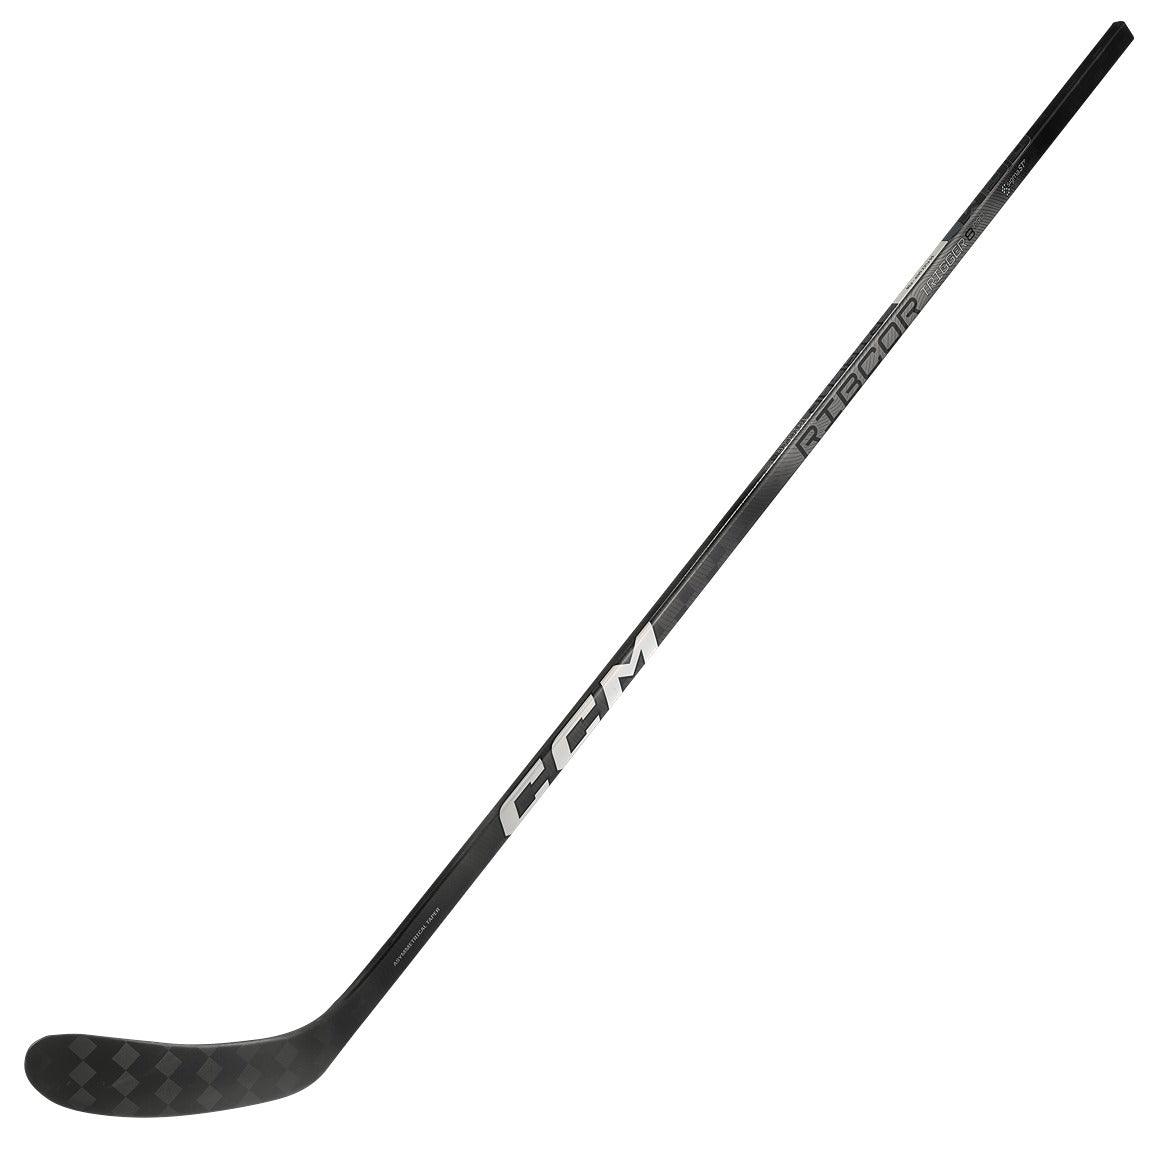 CCM Ribcor Trigger 8 Pro (Chrome) Hockey Stick - junior